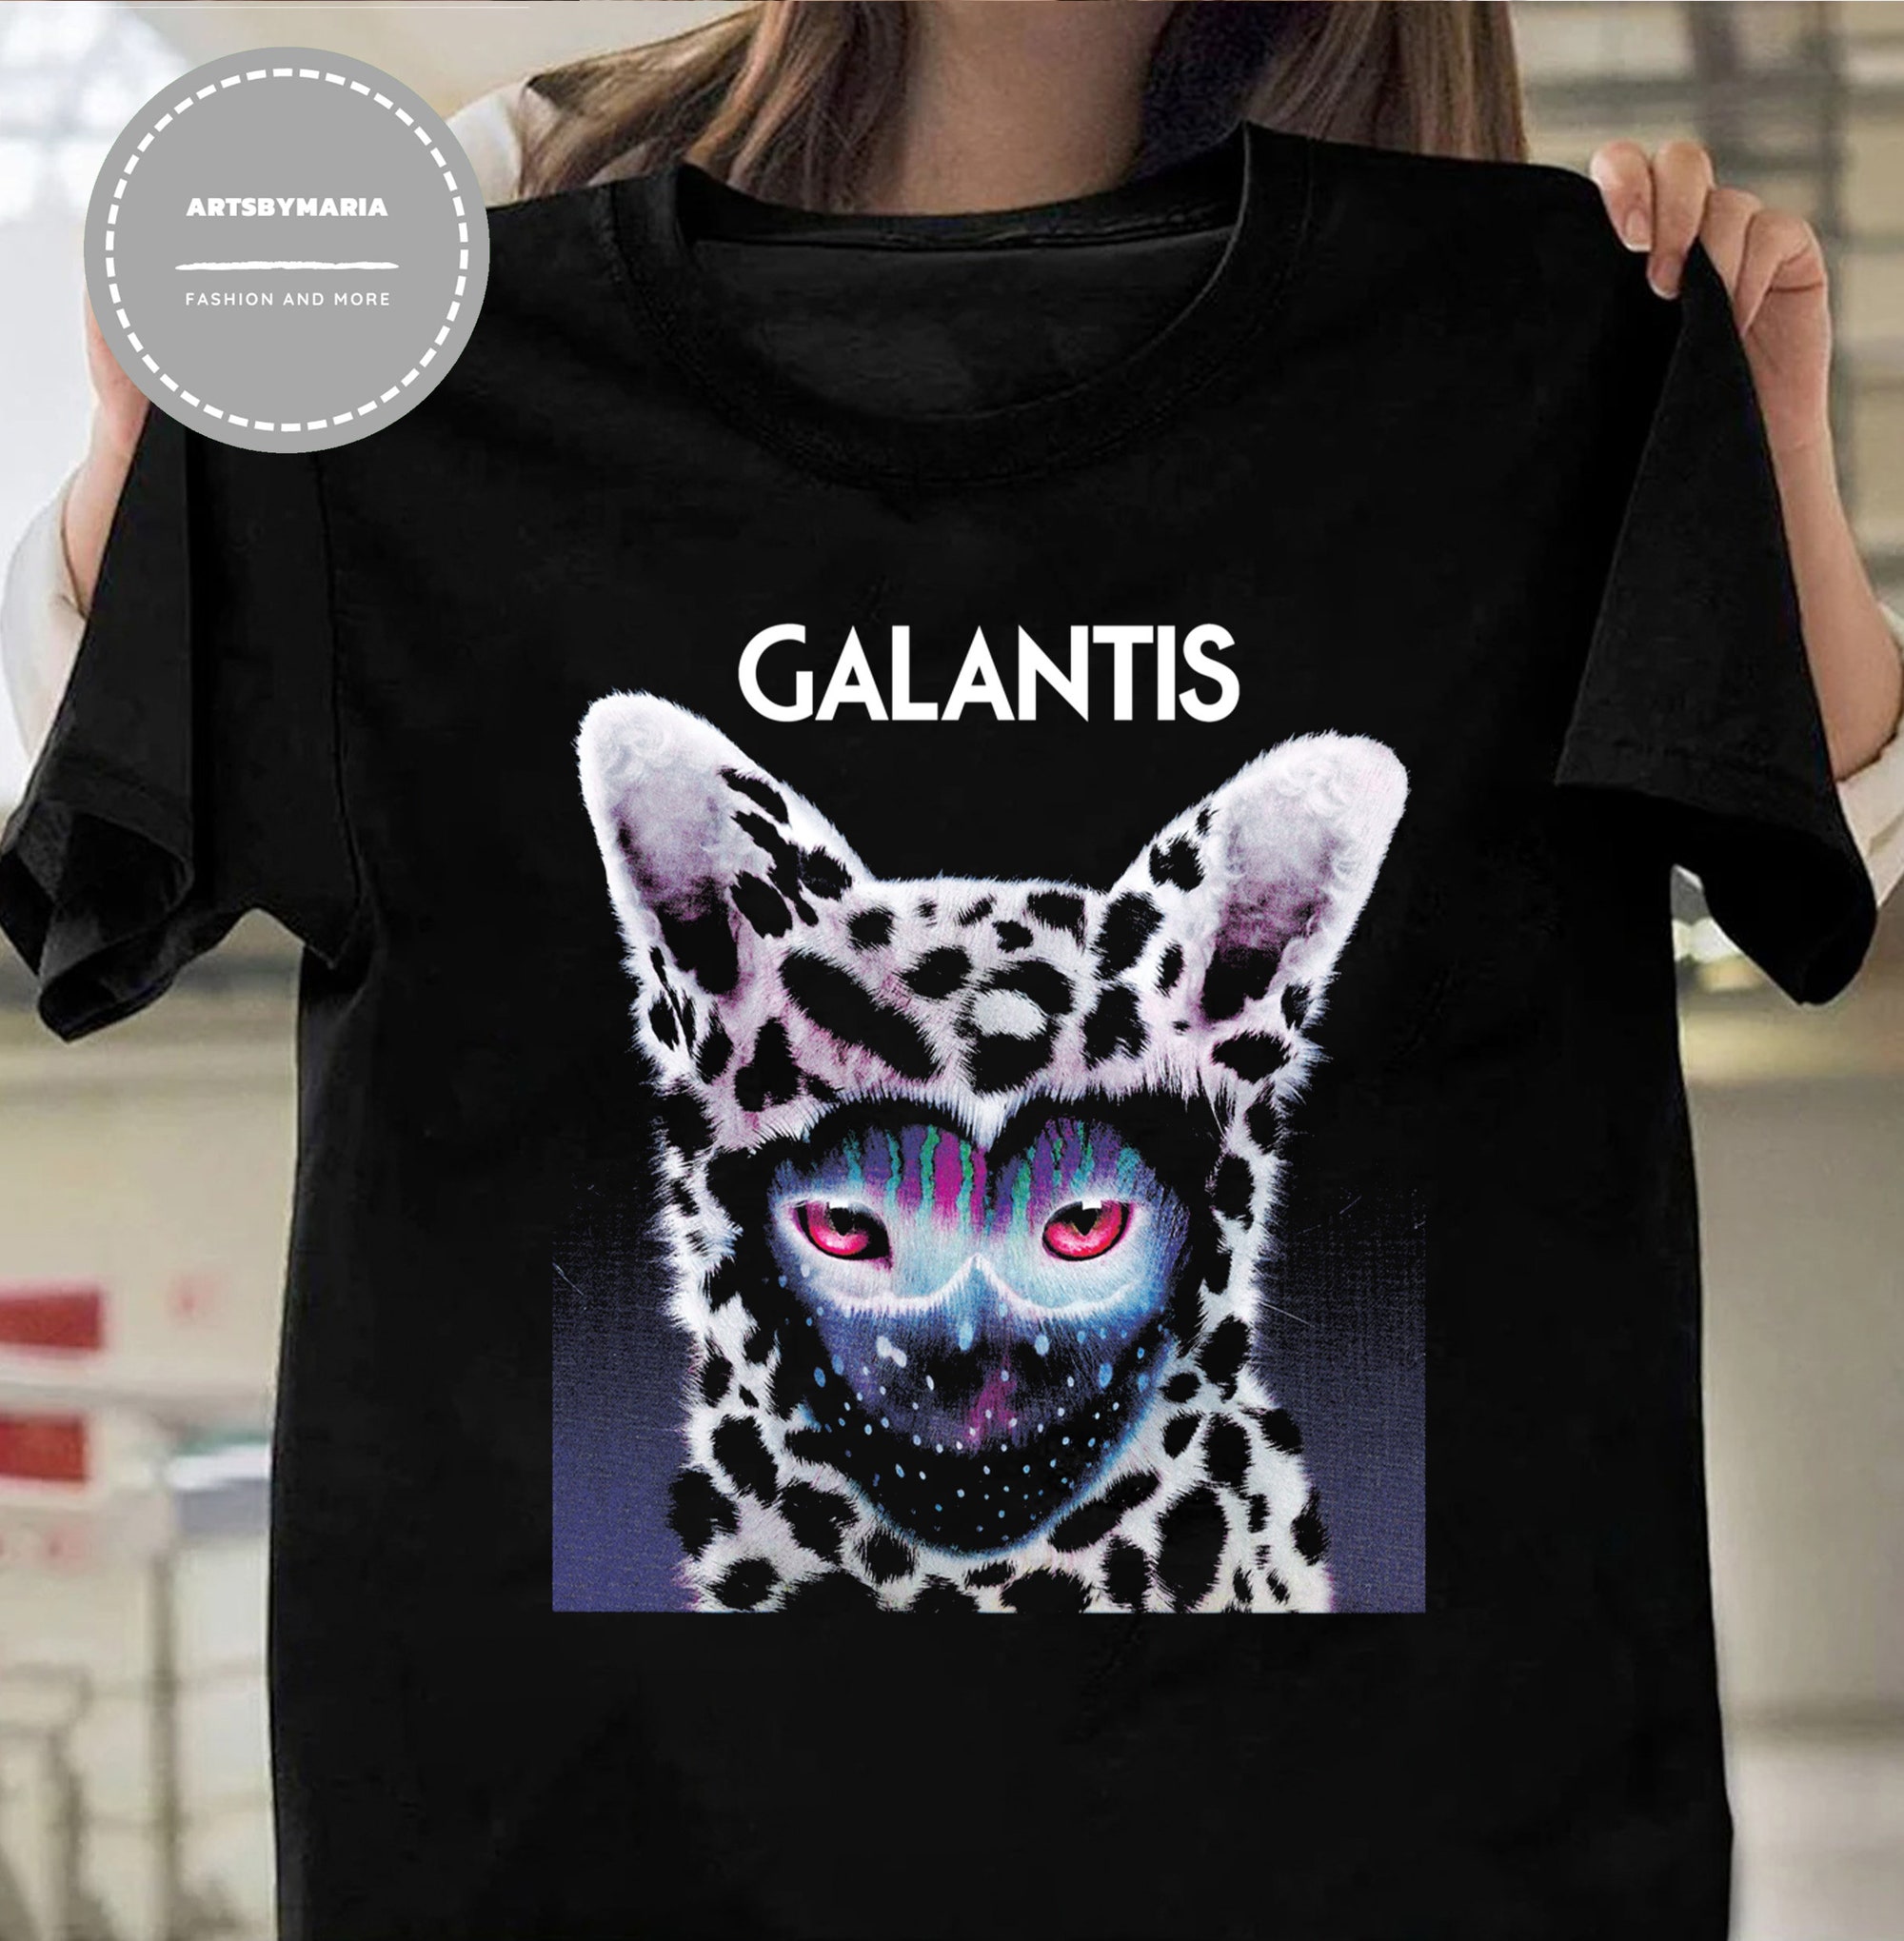 Discover Galantis shirt, Galantis Festival Music shirt, Galantis Tour 2022 shirt